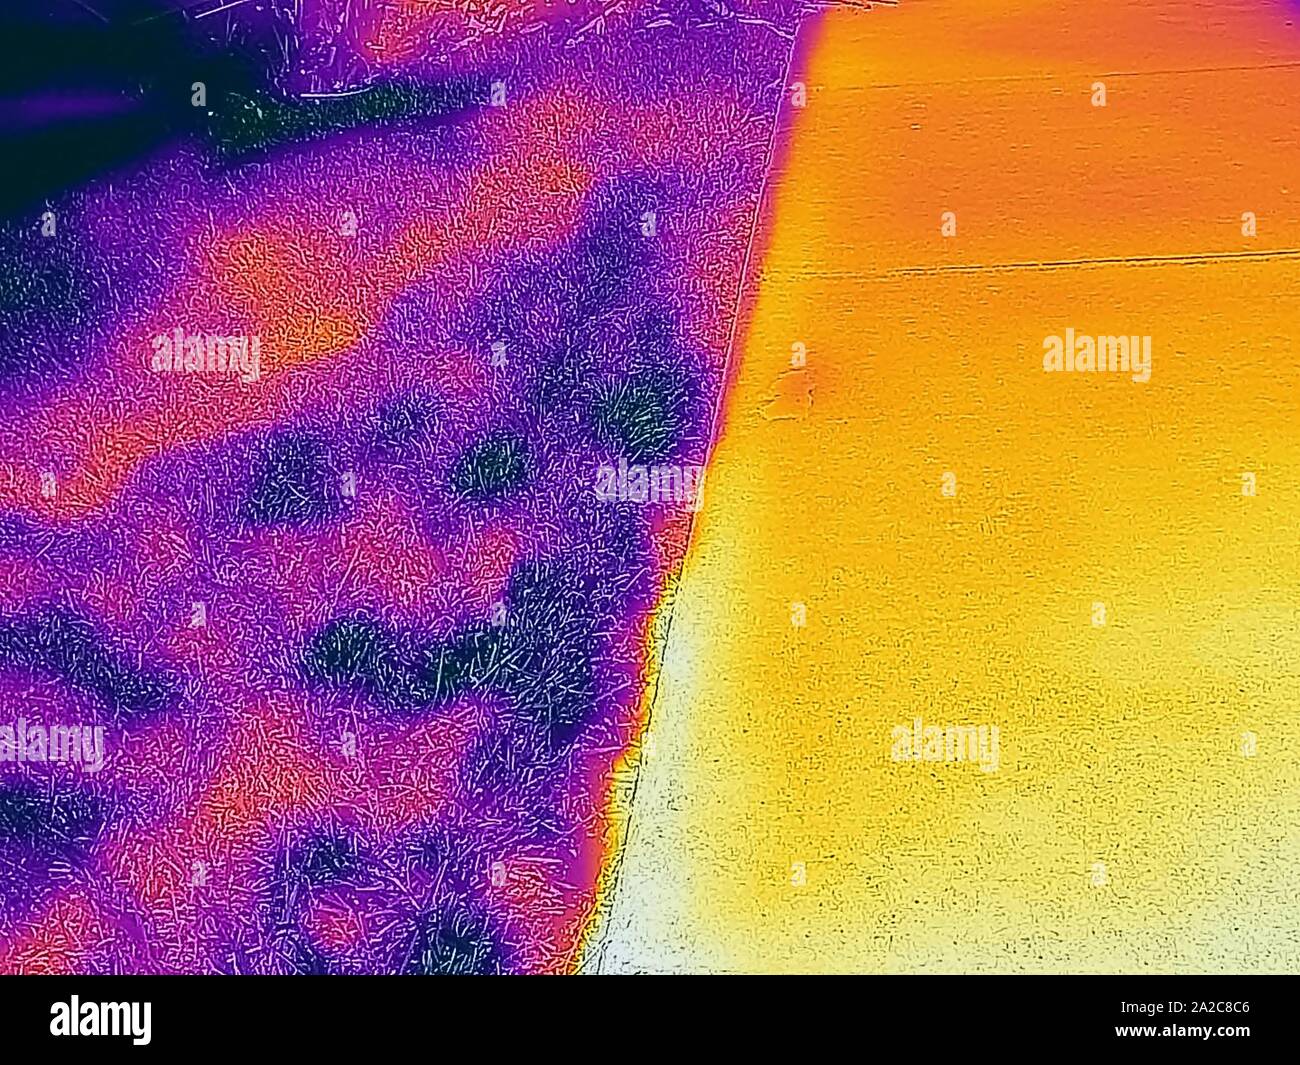 Wärmebild der Wärmebildkamera, mit hellen, höheren Temperaturen entsprechenden Bereichen, mit heißem gepflasterten Gehweg (R) im Gegensatz zu kälterem Grünbereich (L), was den städtischen Wärmeinseleffekt illustriert, bei dem eine größere Anzahl gepflasterter Flächen in Städten, San Ramon, Kalifornien, 2. September 2019, höhere Temperaturen zur Folge hat. () Stockfoto